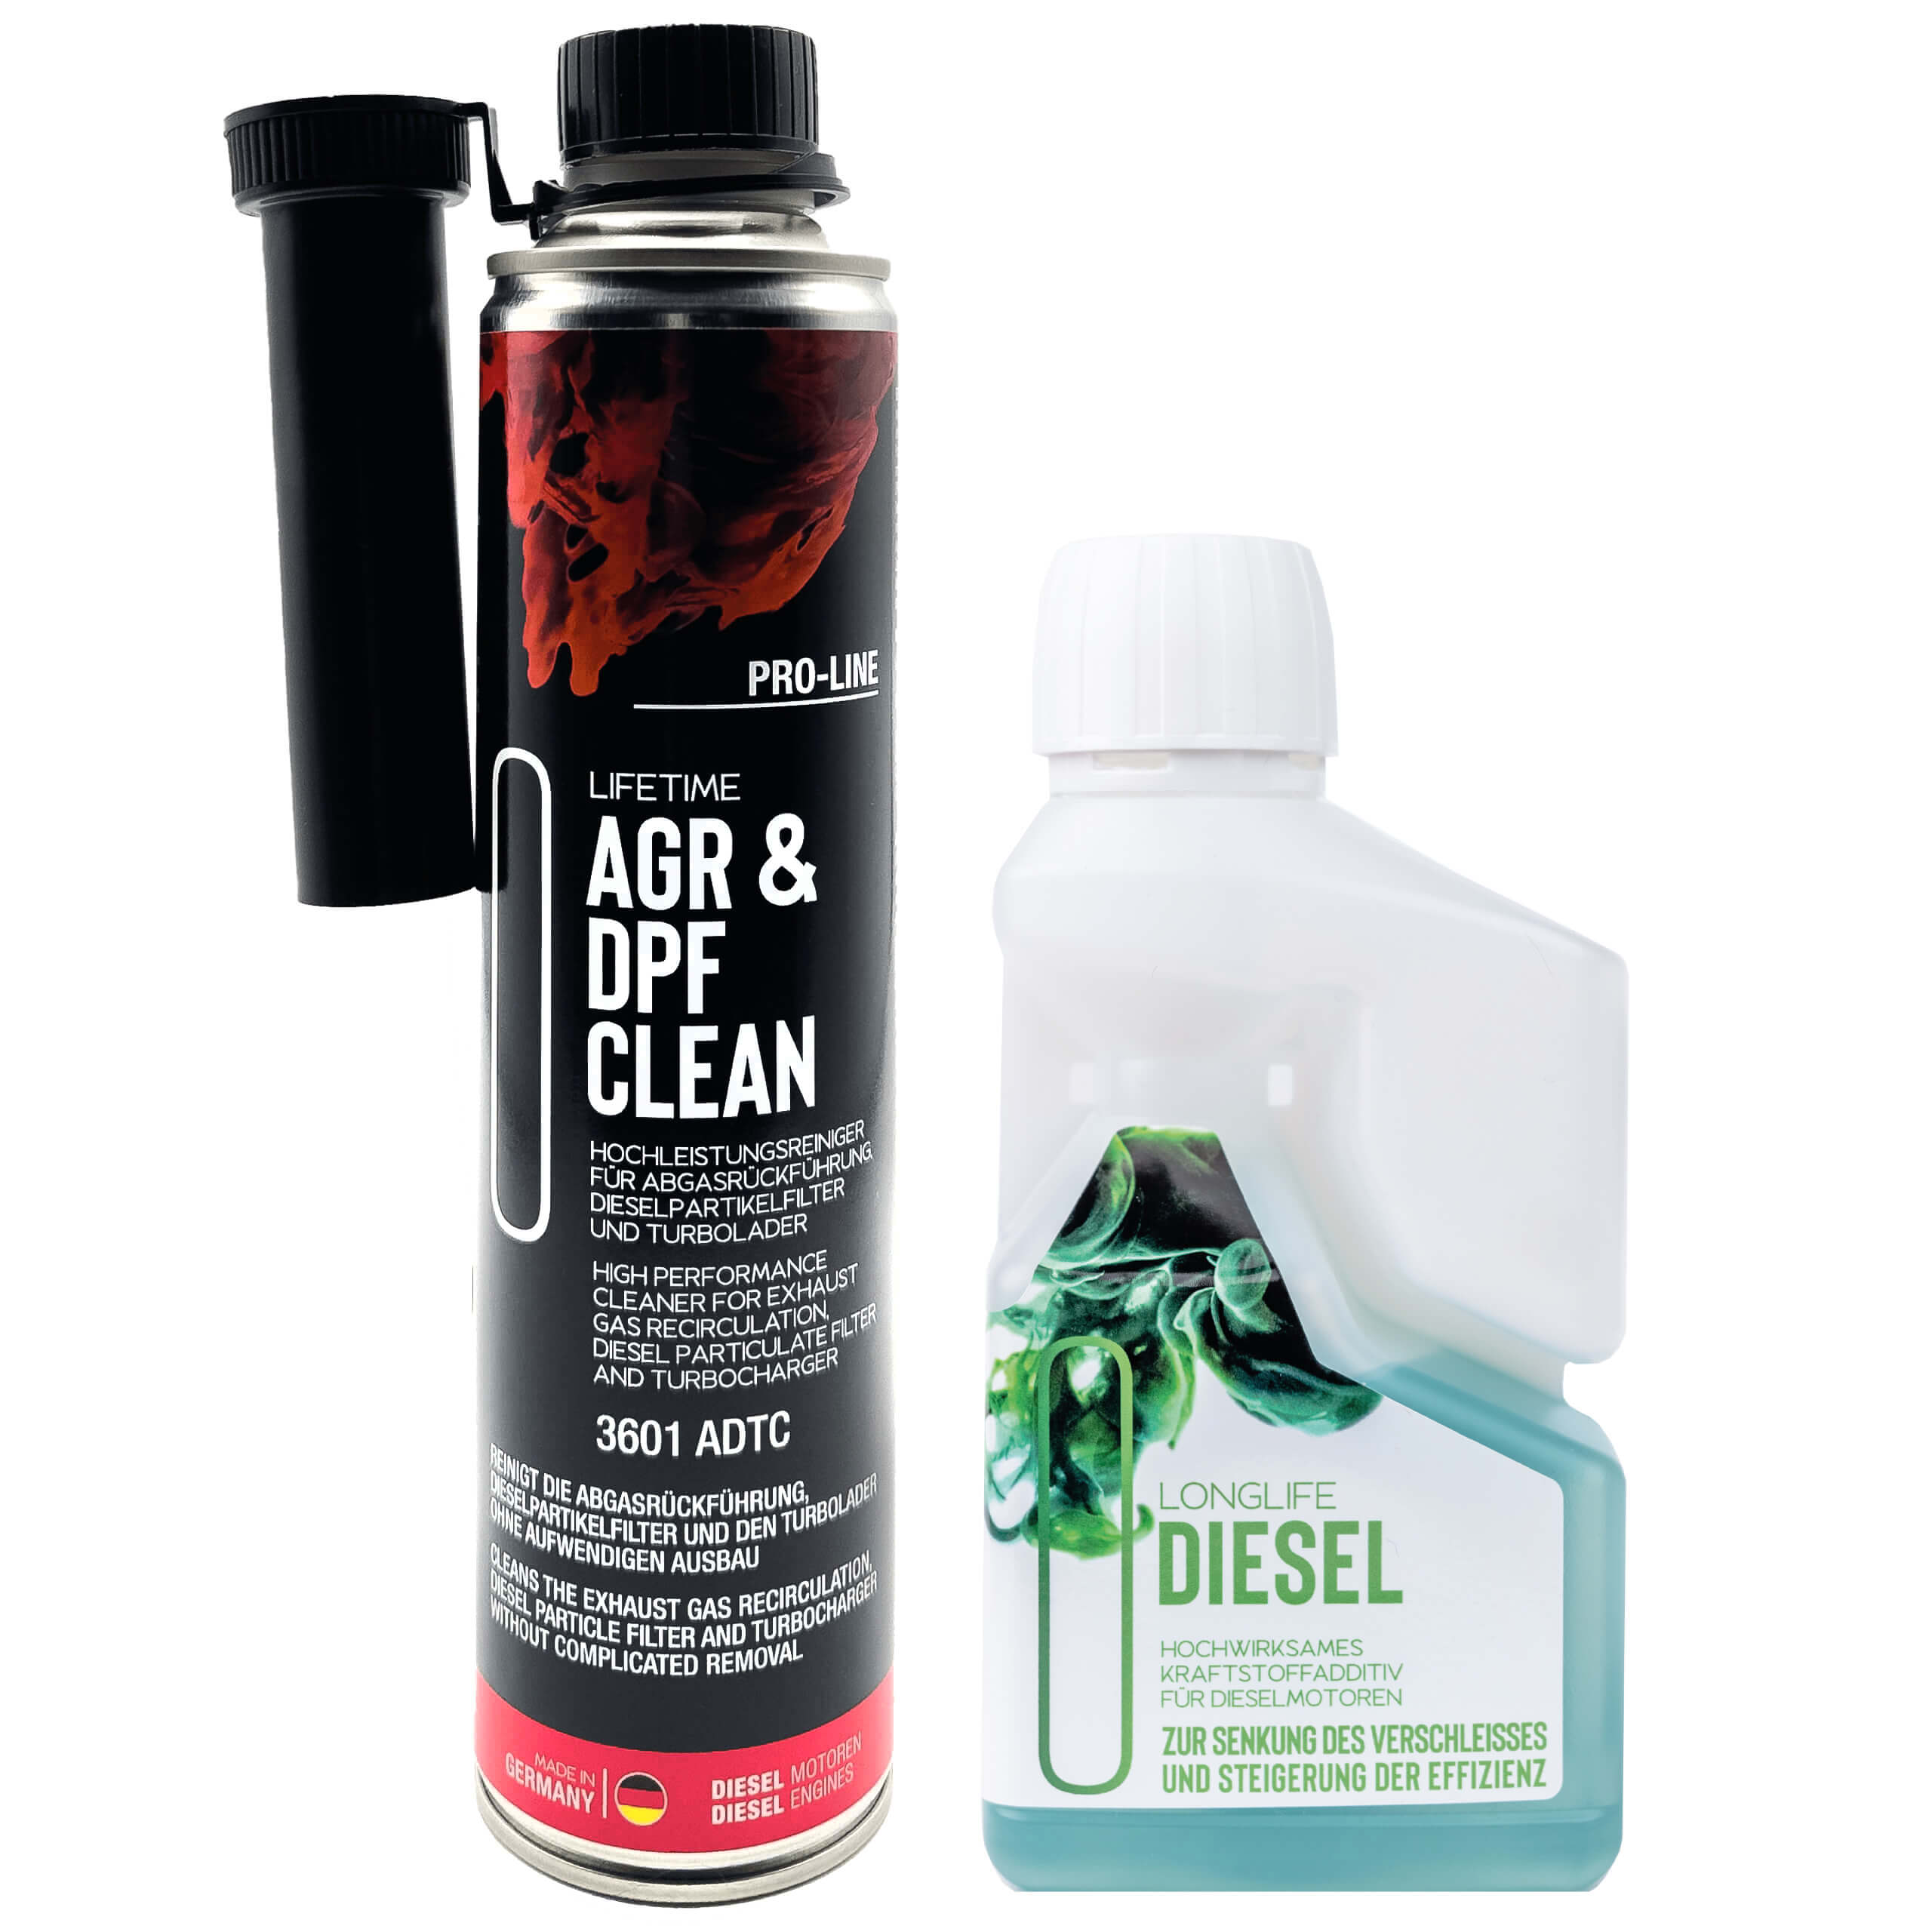 Lifetime AGR & DPF Reinigungs-Kit für Ihren Diesel